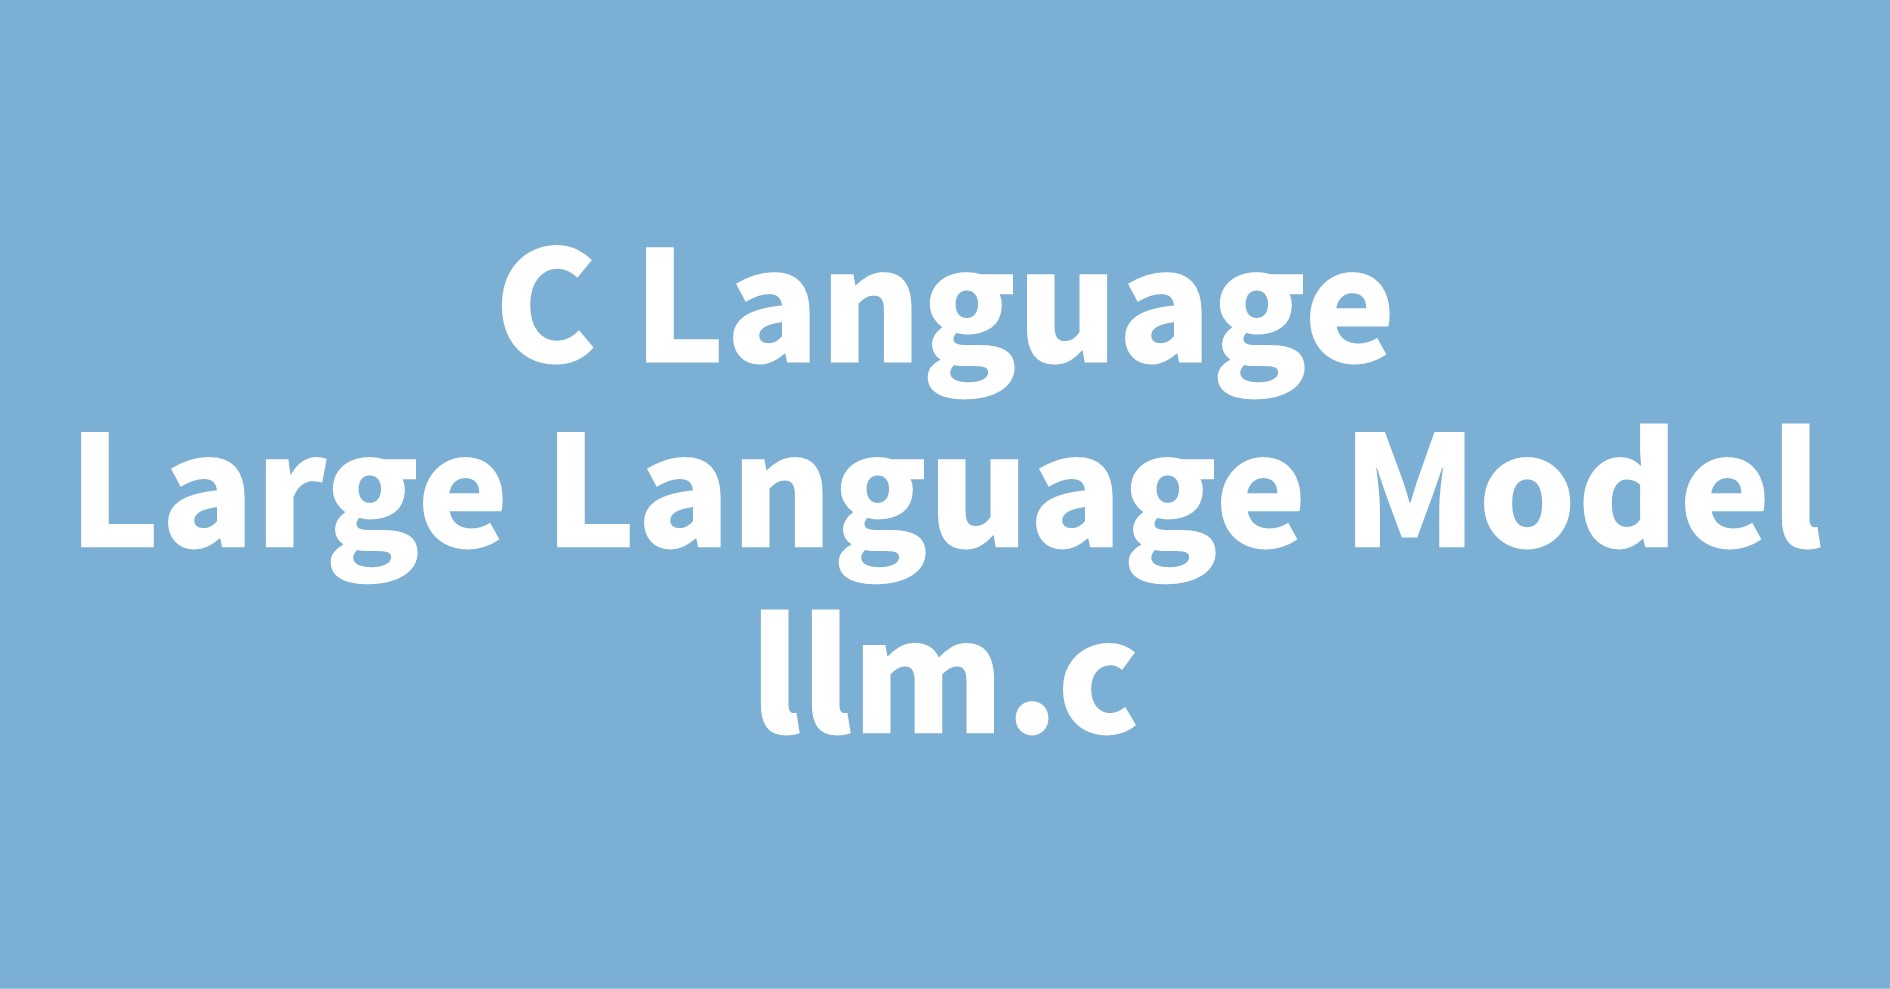 C Language Large Language Model llm.c